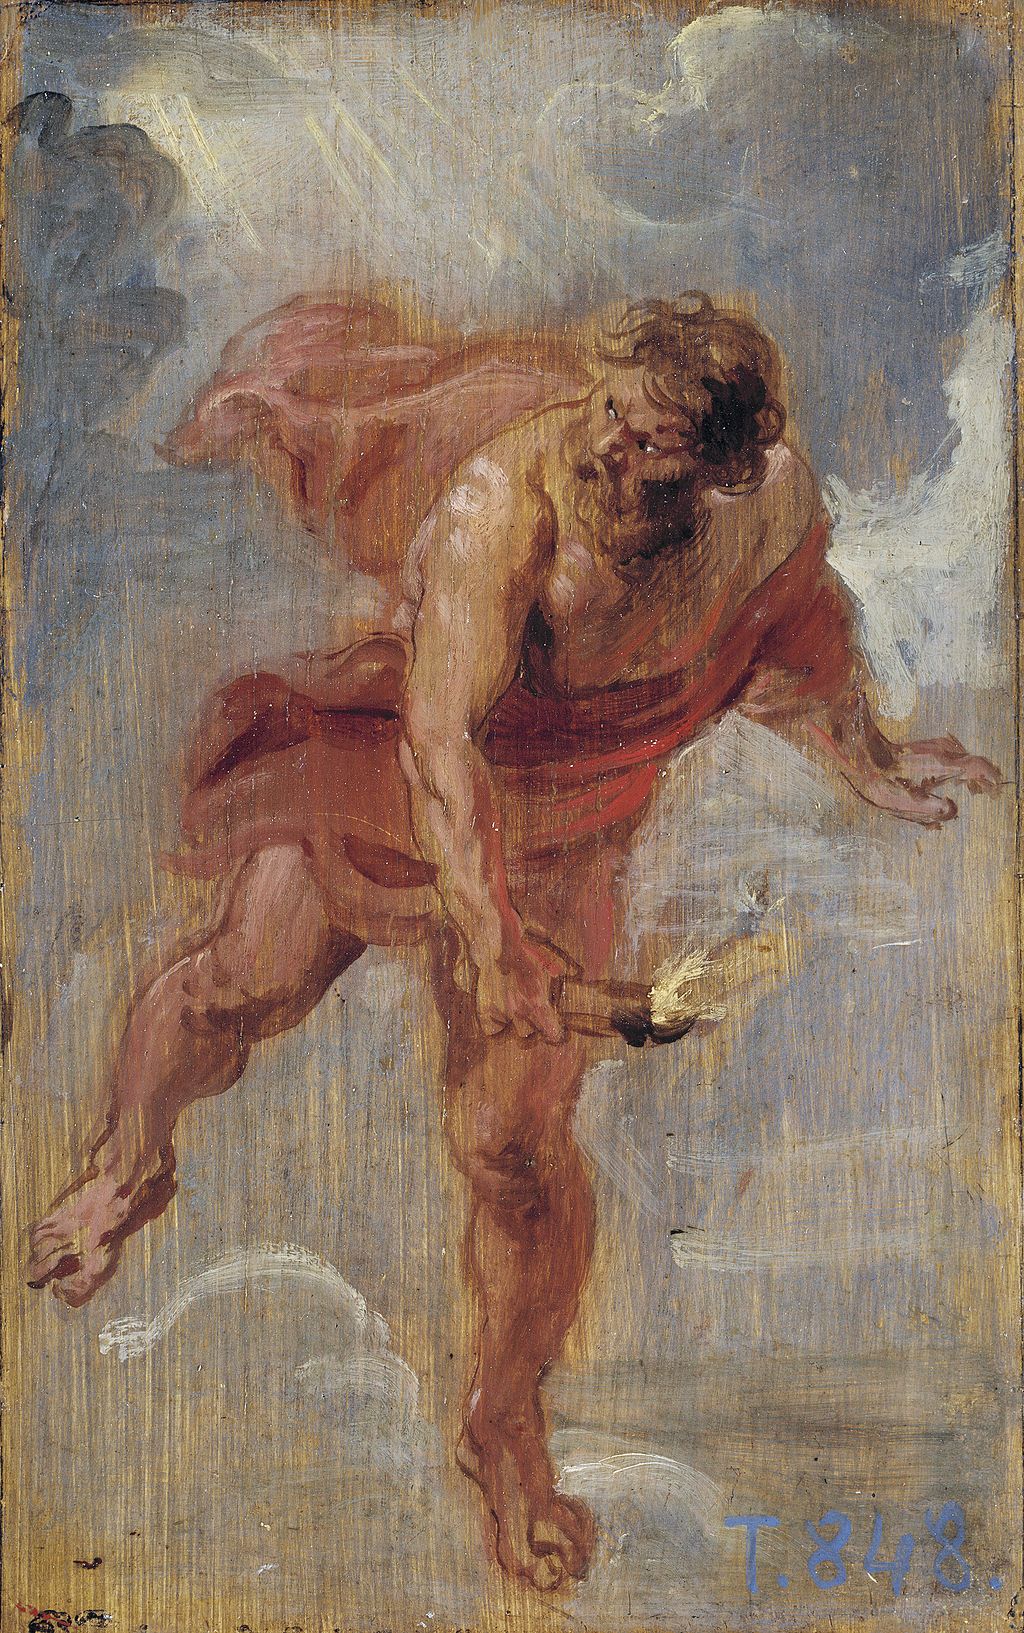 Prometheus, 1636 - 1637. Oil on panel